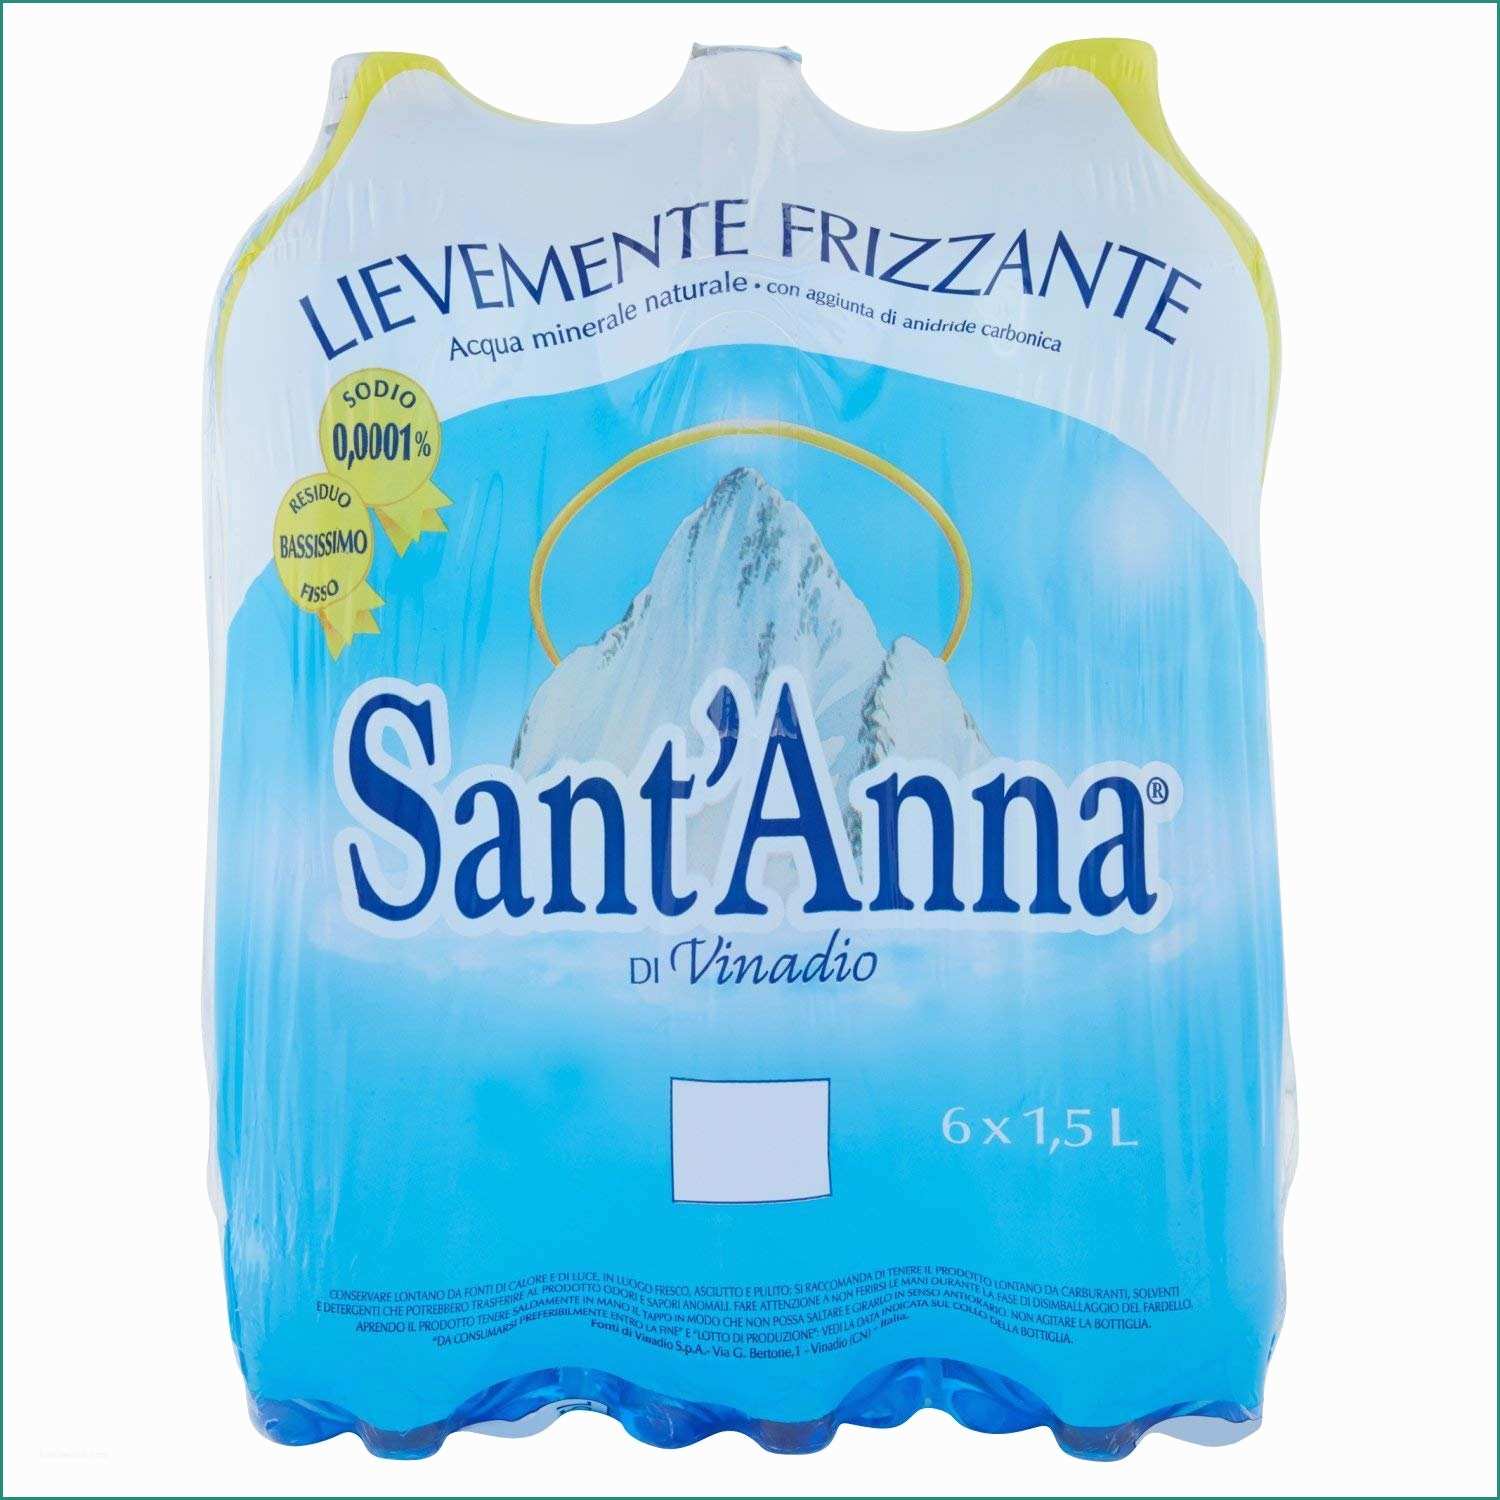 Residuo Fisso Acqua Panna E Sant Anna Acqua Minerale Lievemente Frizzante 6 Pezzi Da 1 5 Litri